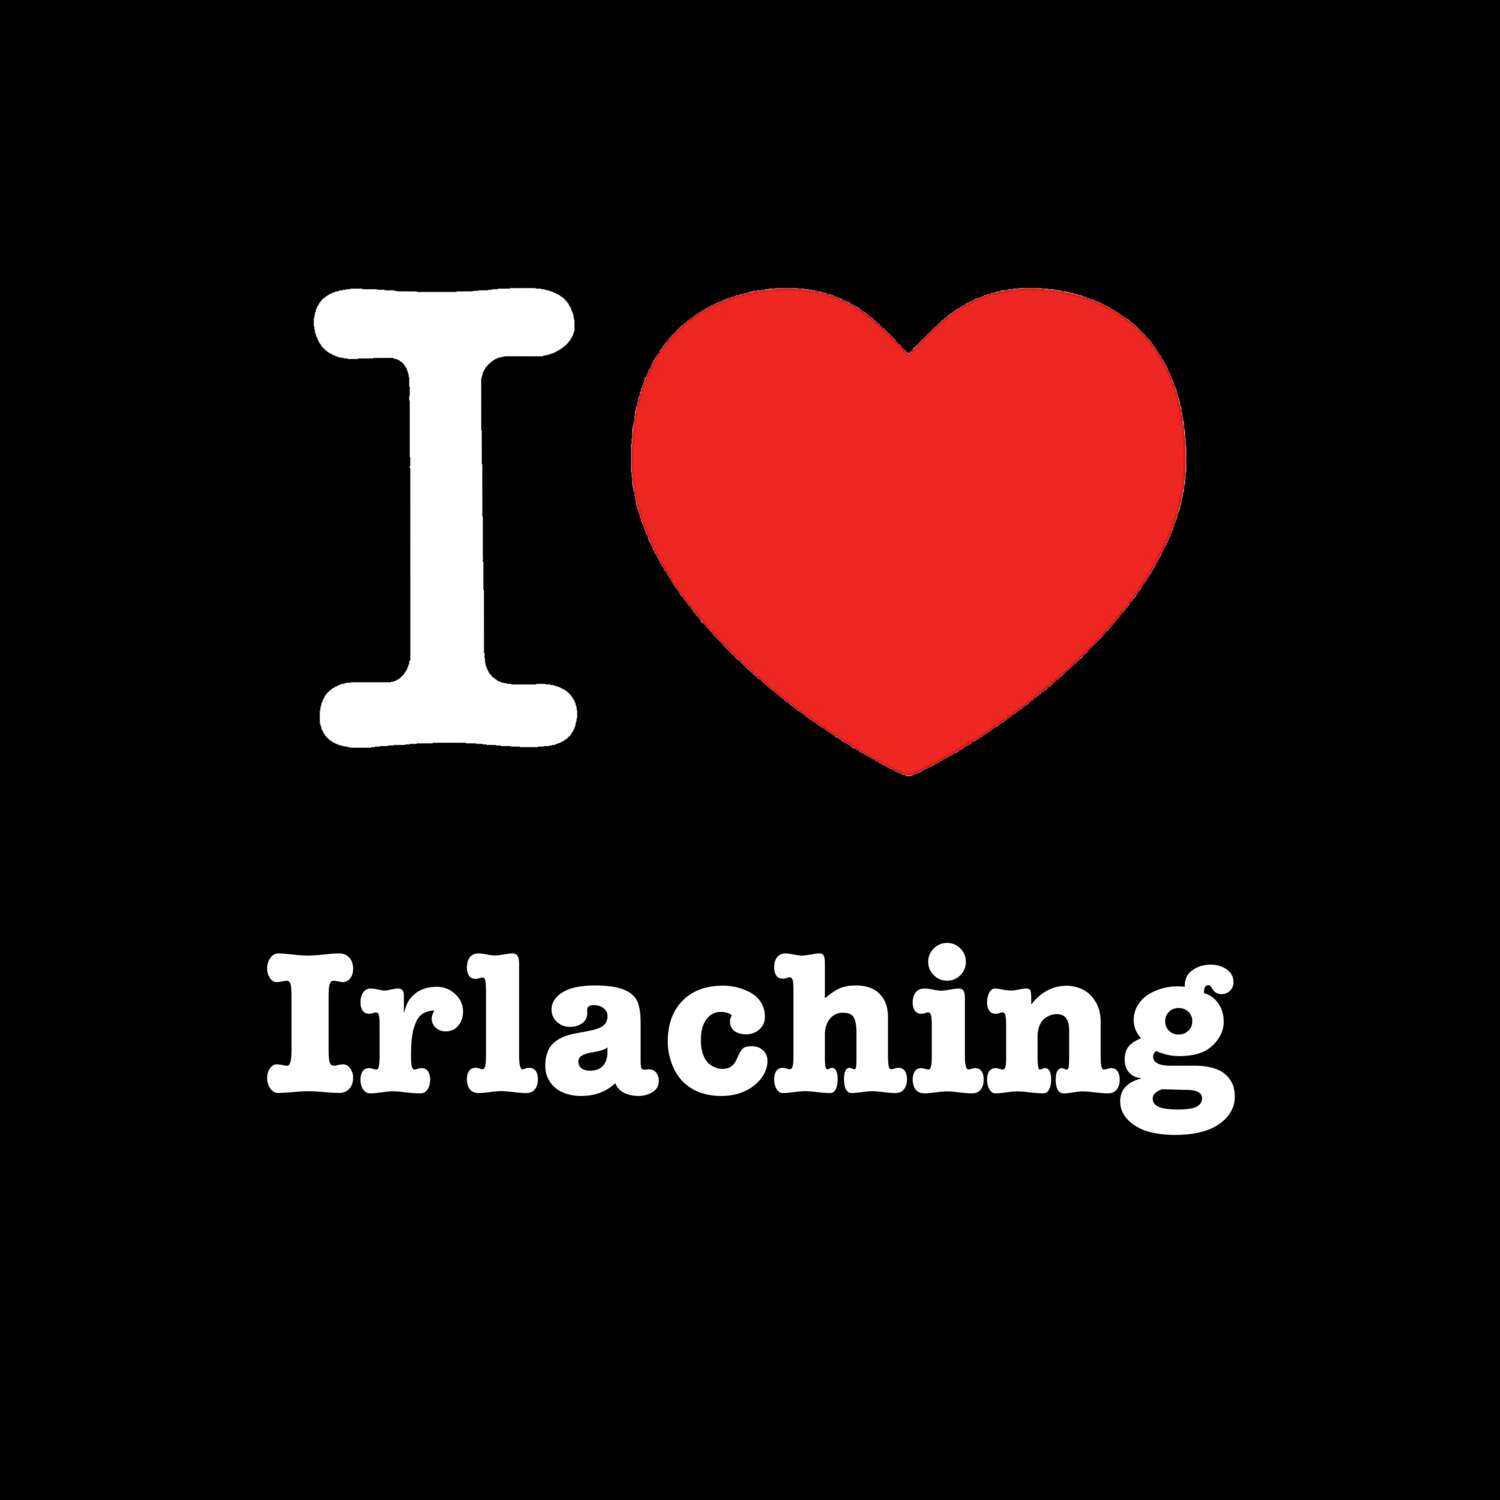 Irlaching T-Shirt »I love«